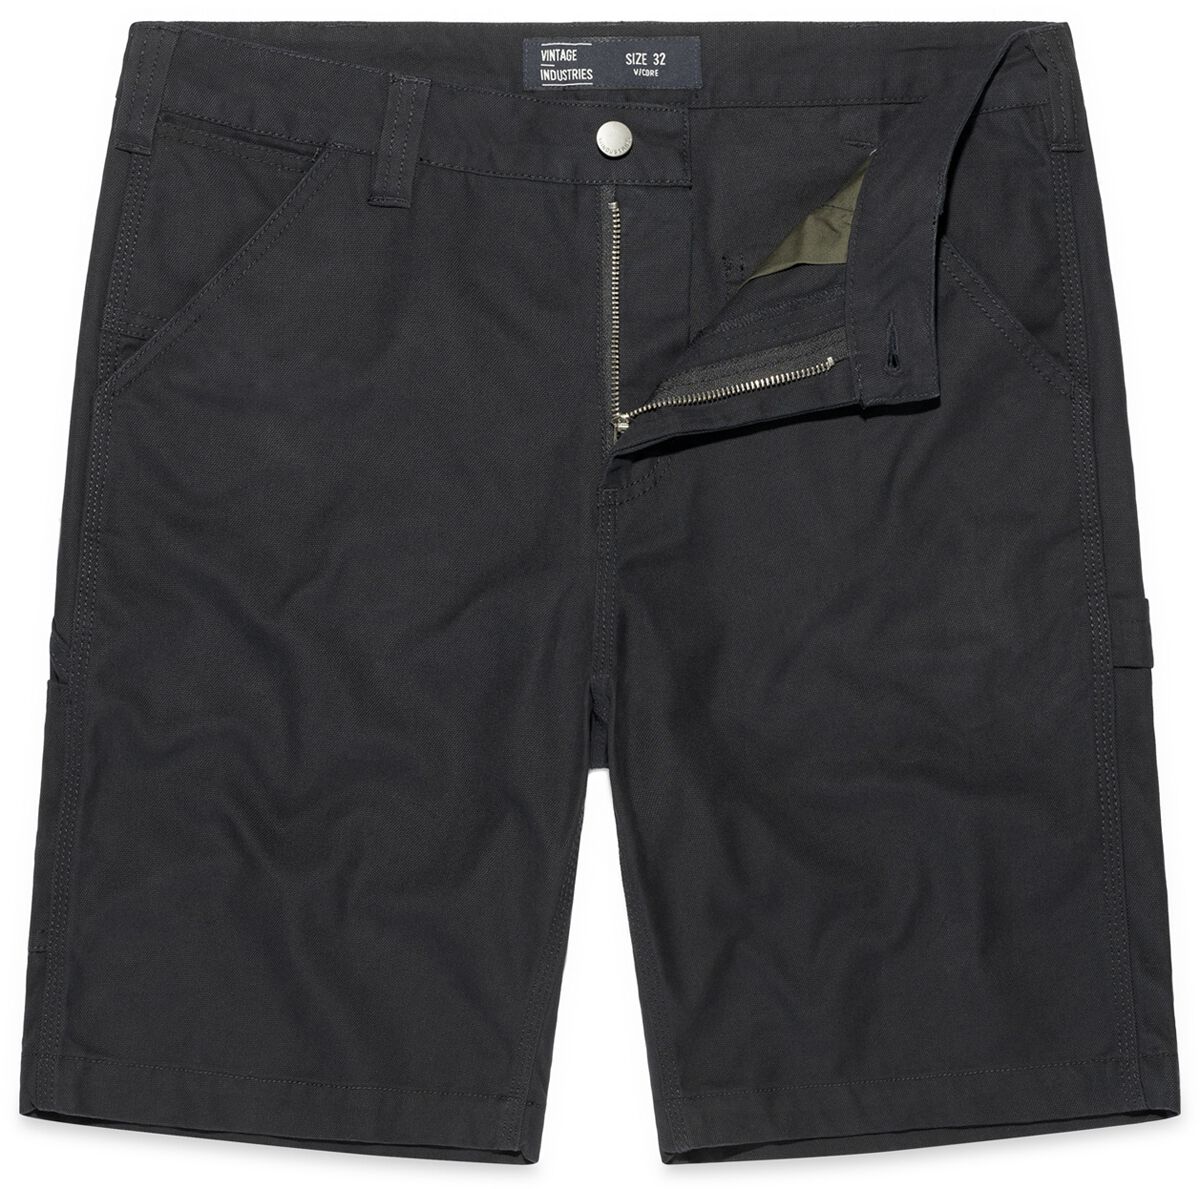 Vintage Industries Short - Dayton Shorts - 32 bis 38 - für Männer - Größe 38 - schwarz